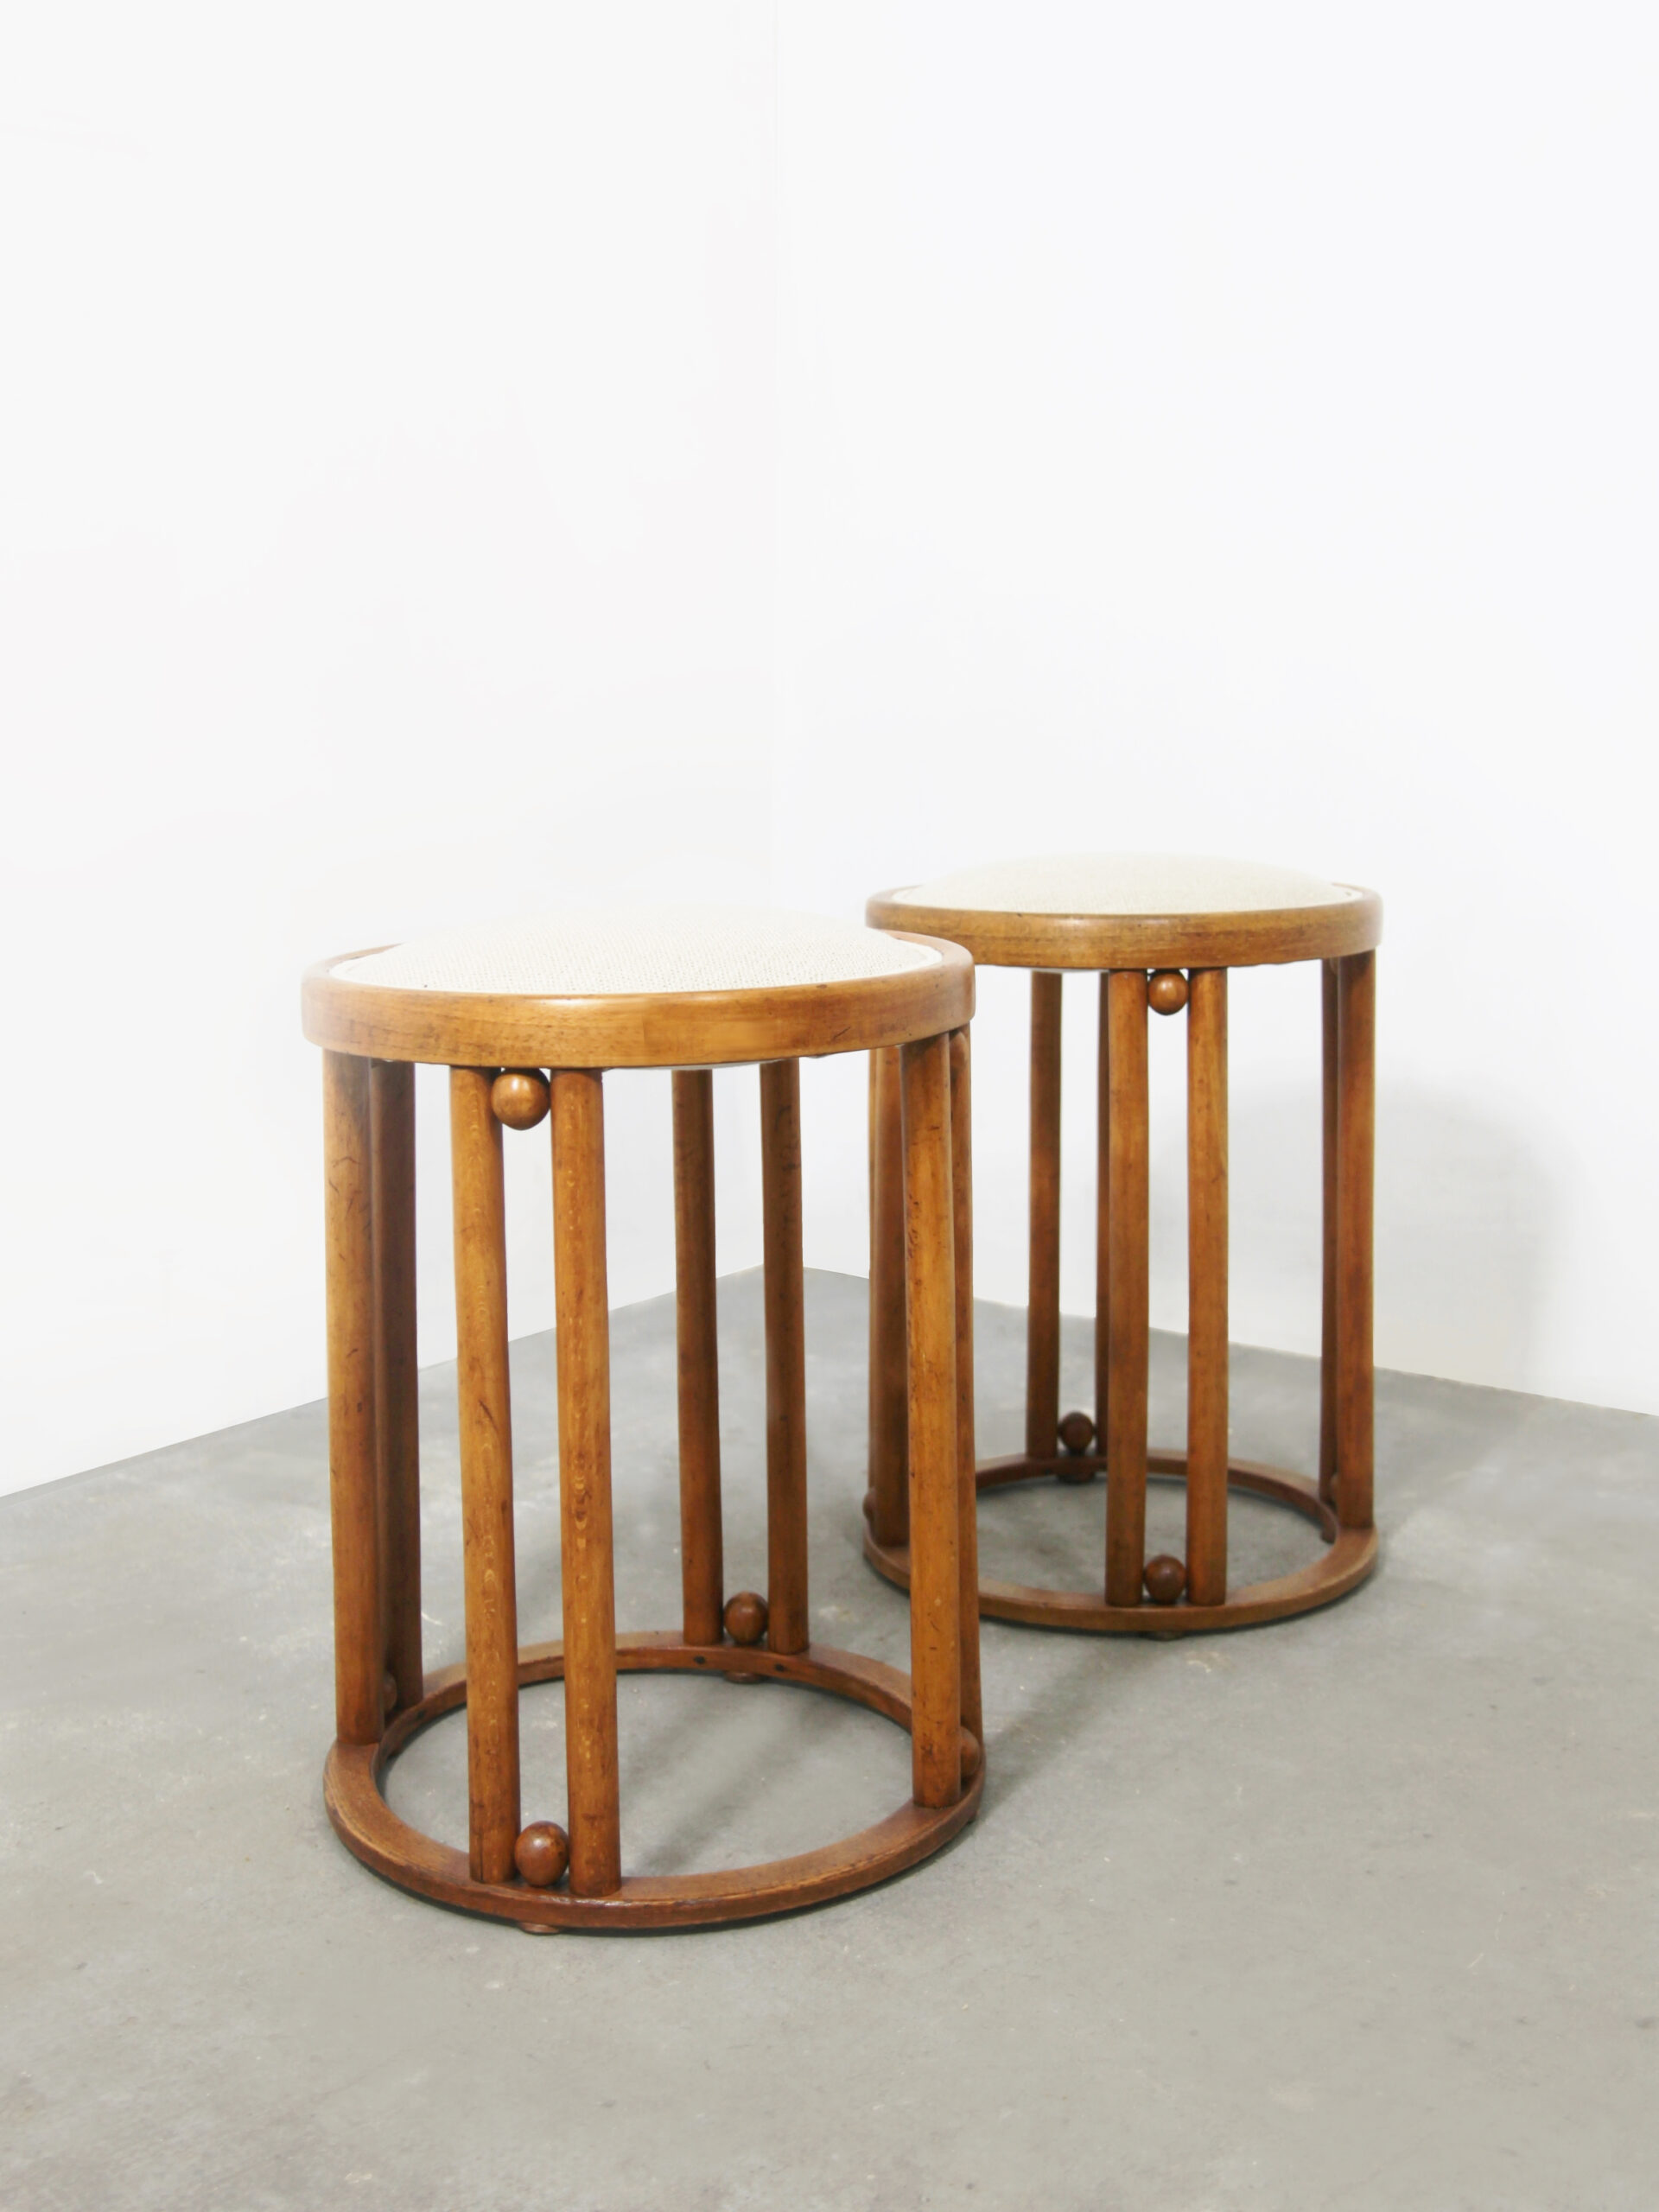 Pair of stools mod. 728, known as “Fledermaus” HOFFMANN Josef